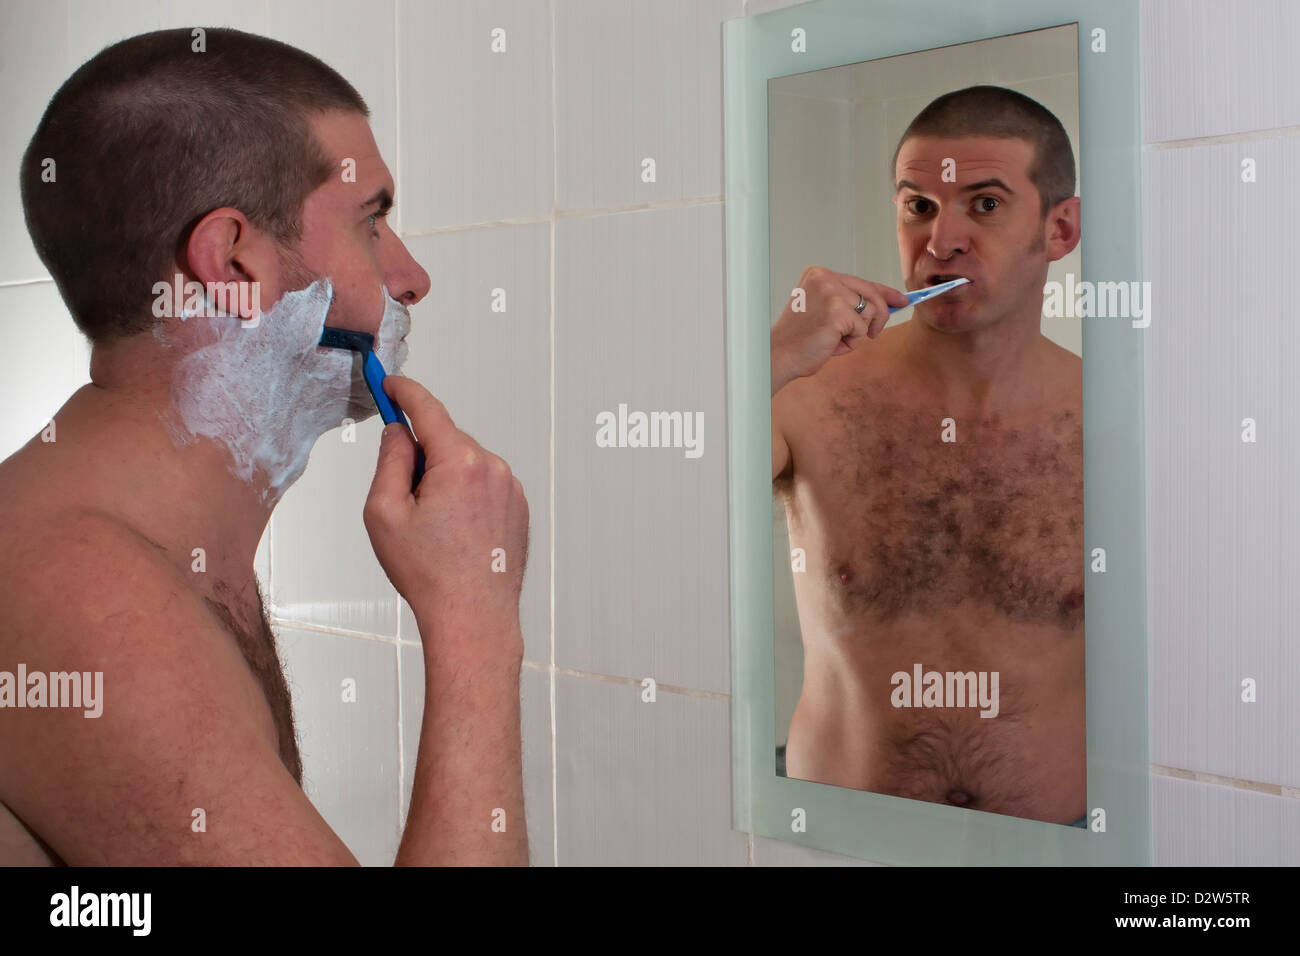 Rasage masculin et de se brosser les dents dans la réflexion en miroir de salle de bains Banque D'Images